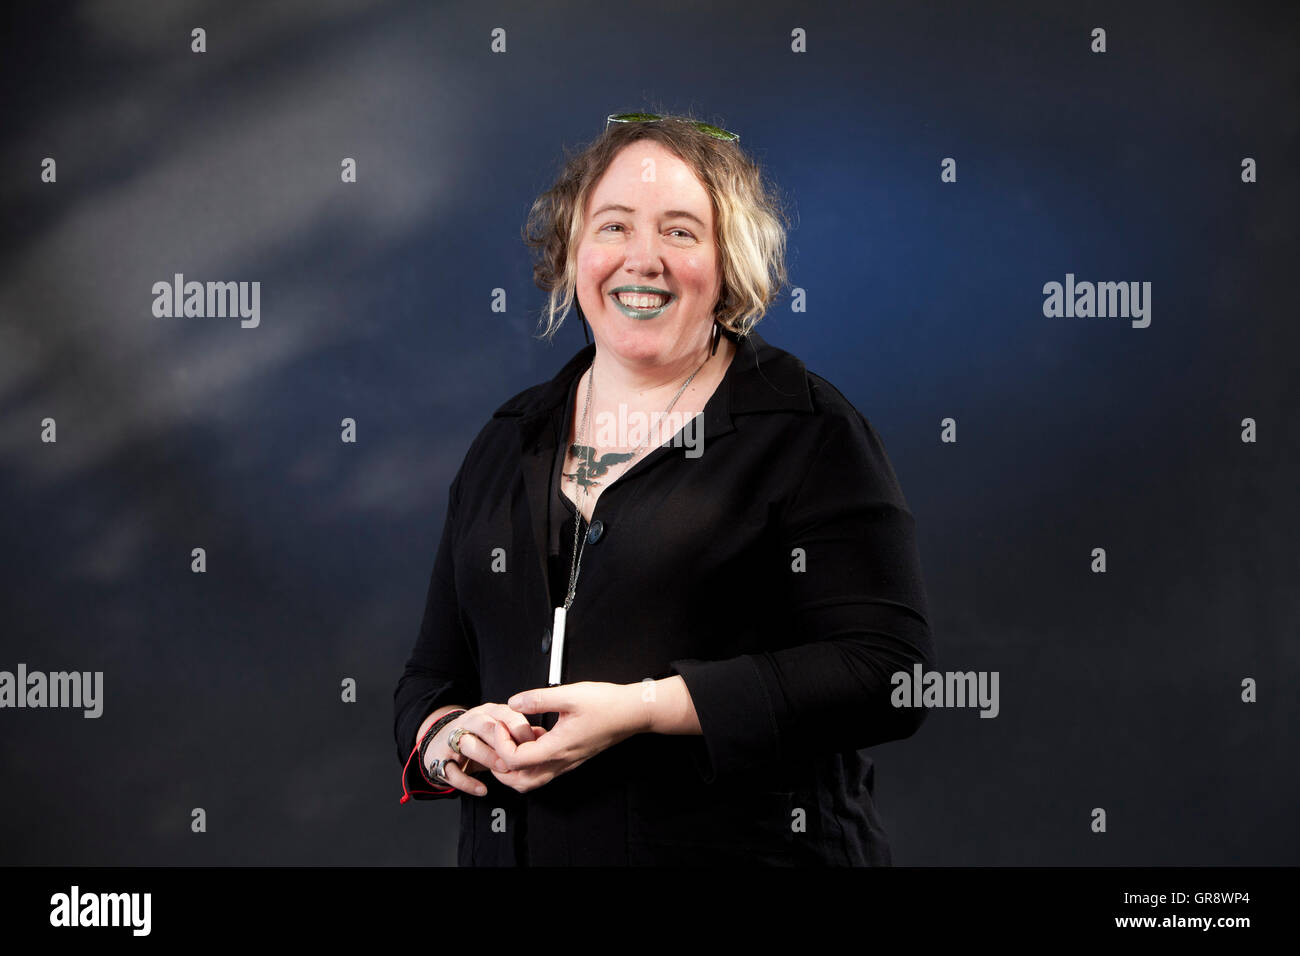 Kelly Link, l'éditeur américain et auteur d'histoires courtes, à l'Edinburgh International Book Festival. Edimbourg, Ecosse. 28 août 2016 Banque D'Images